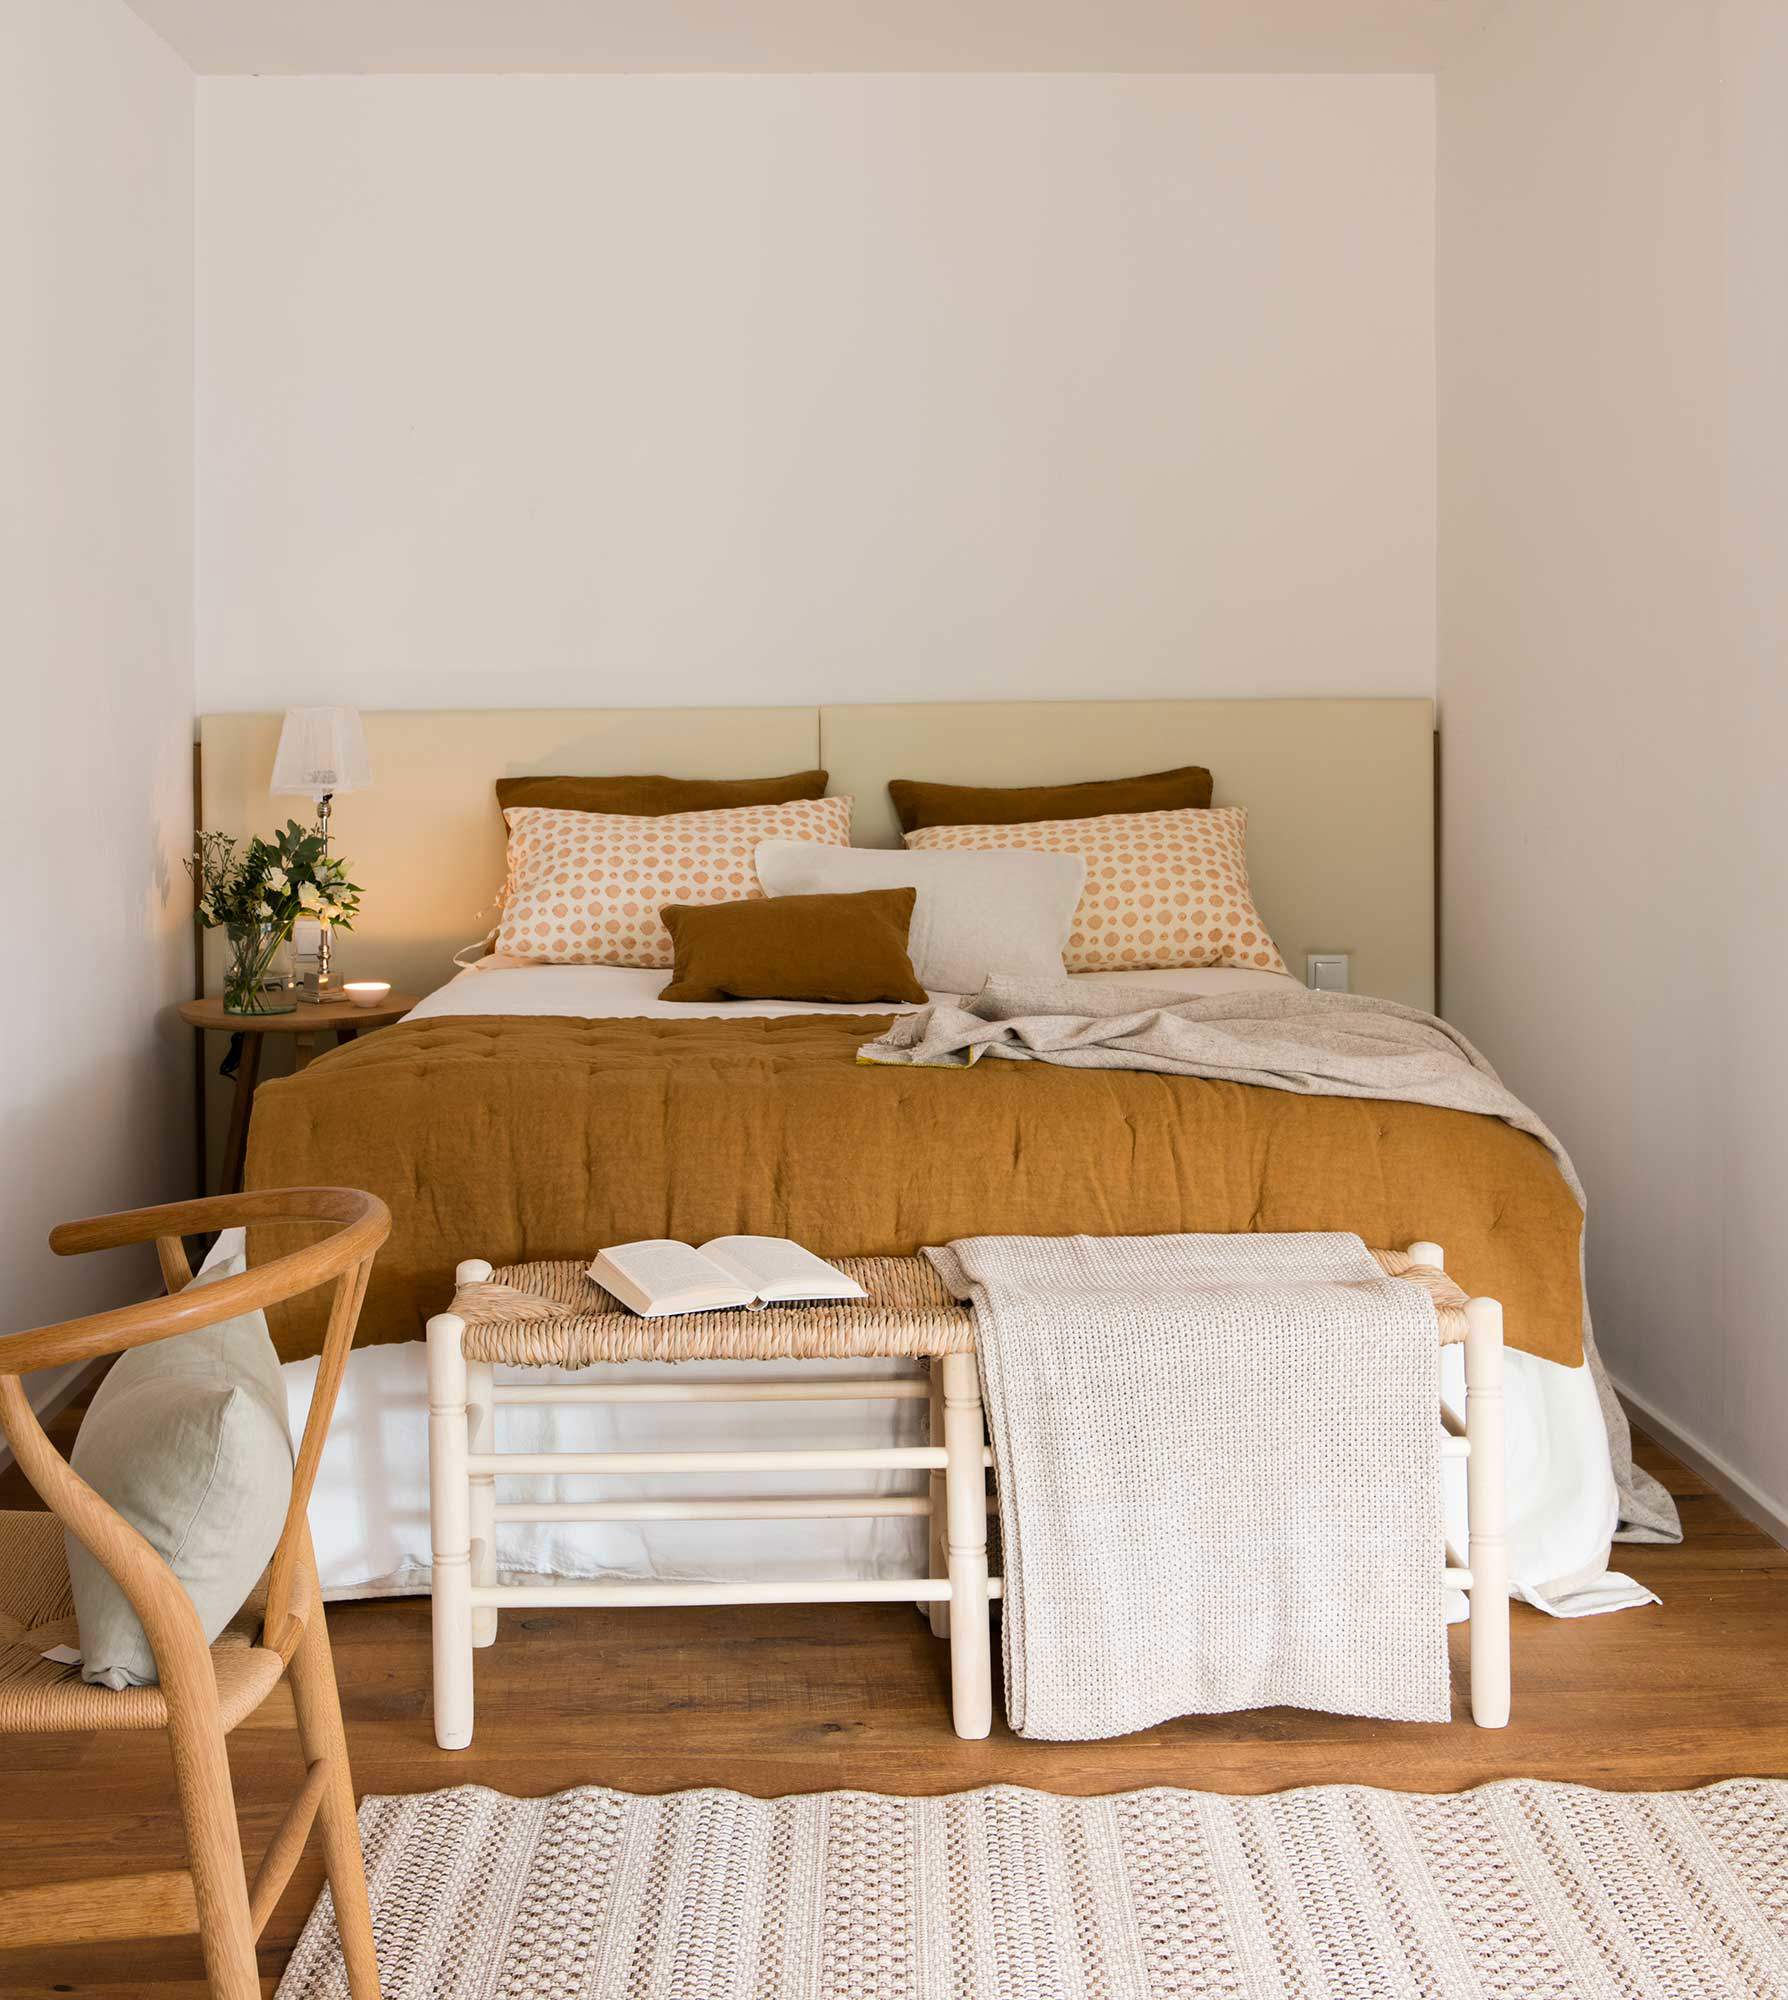 Dormitorio pequeño con cabecero a medida, mesita de noche redonda y banco a los pies de la cama